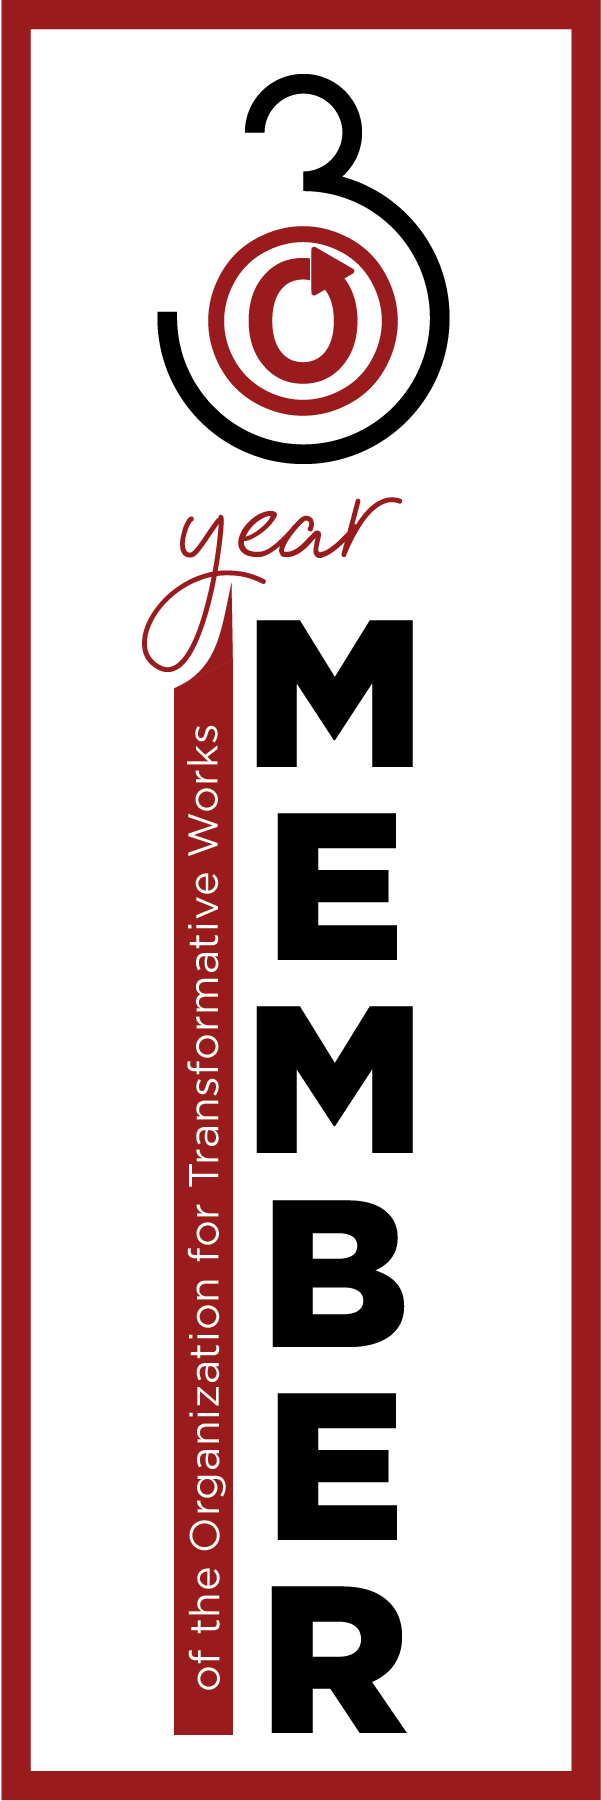 Закладка з написом "Член Організації Перетворчих Робіт впродовж 3-х років " та логотипом OTW.